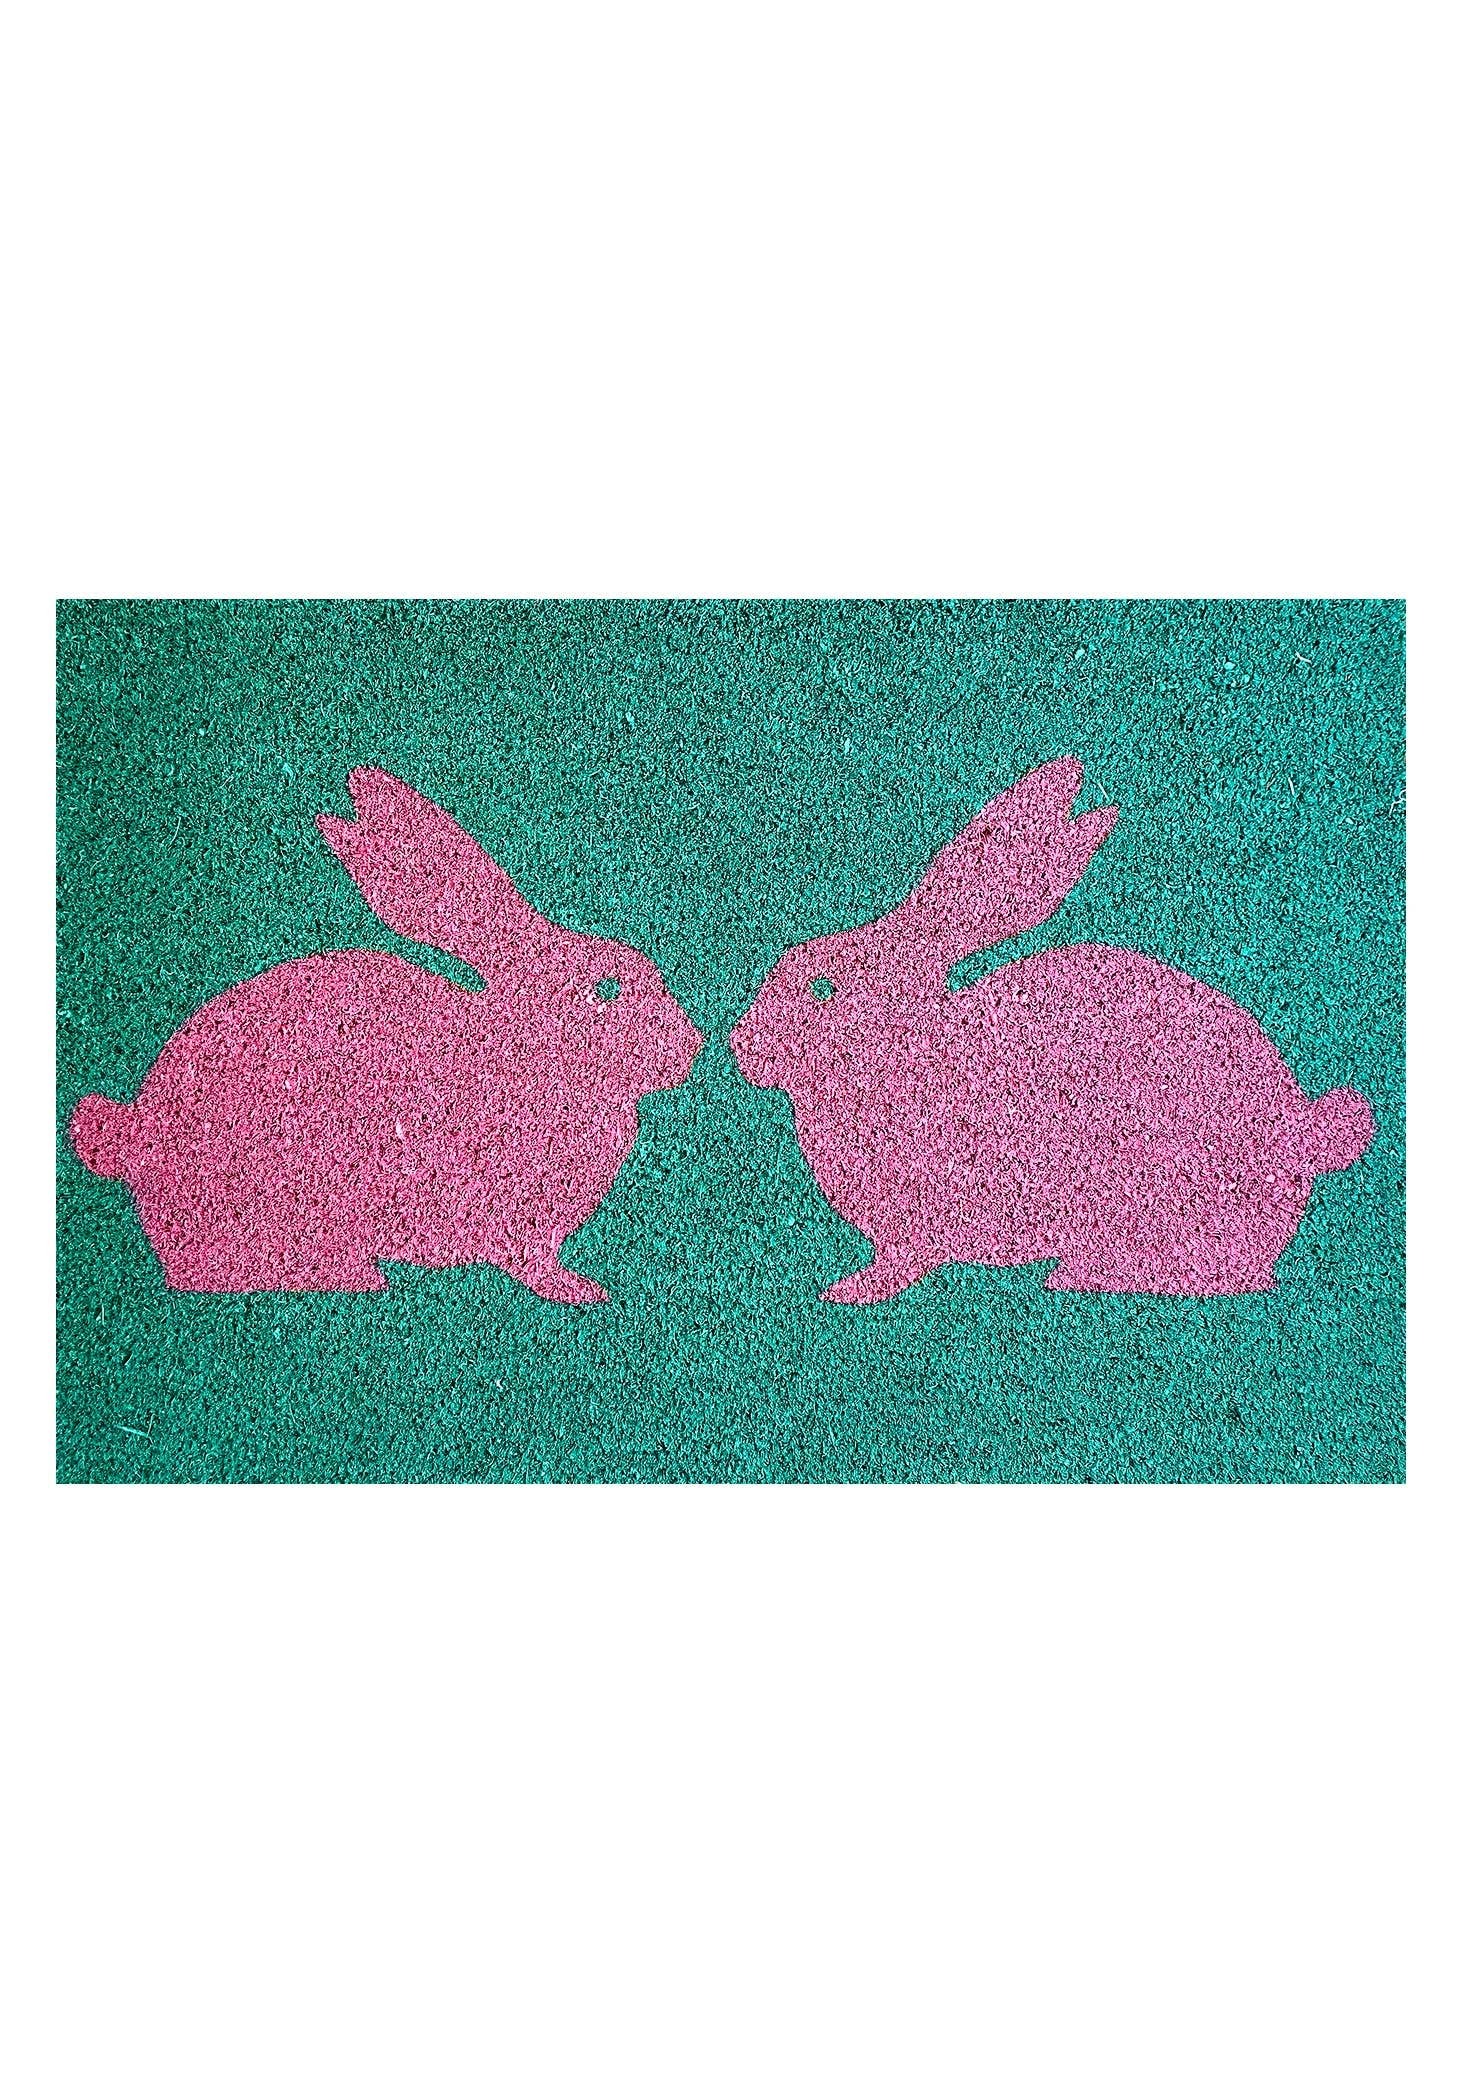 Anorak Kissing Rabbits Printed Doormat